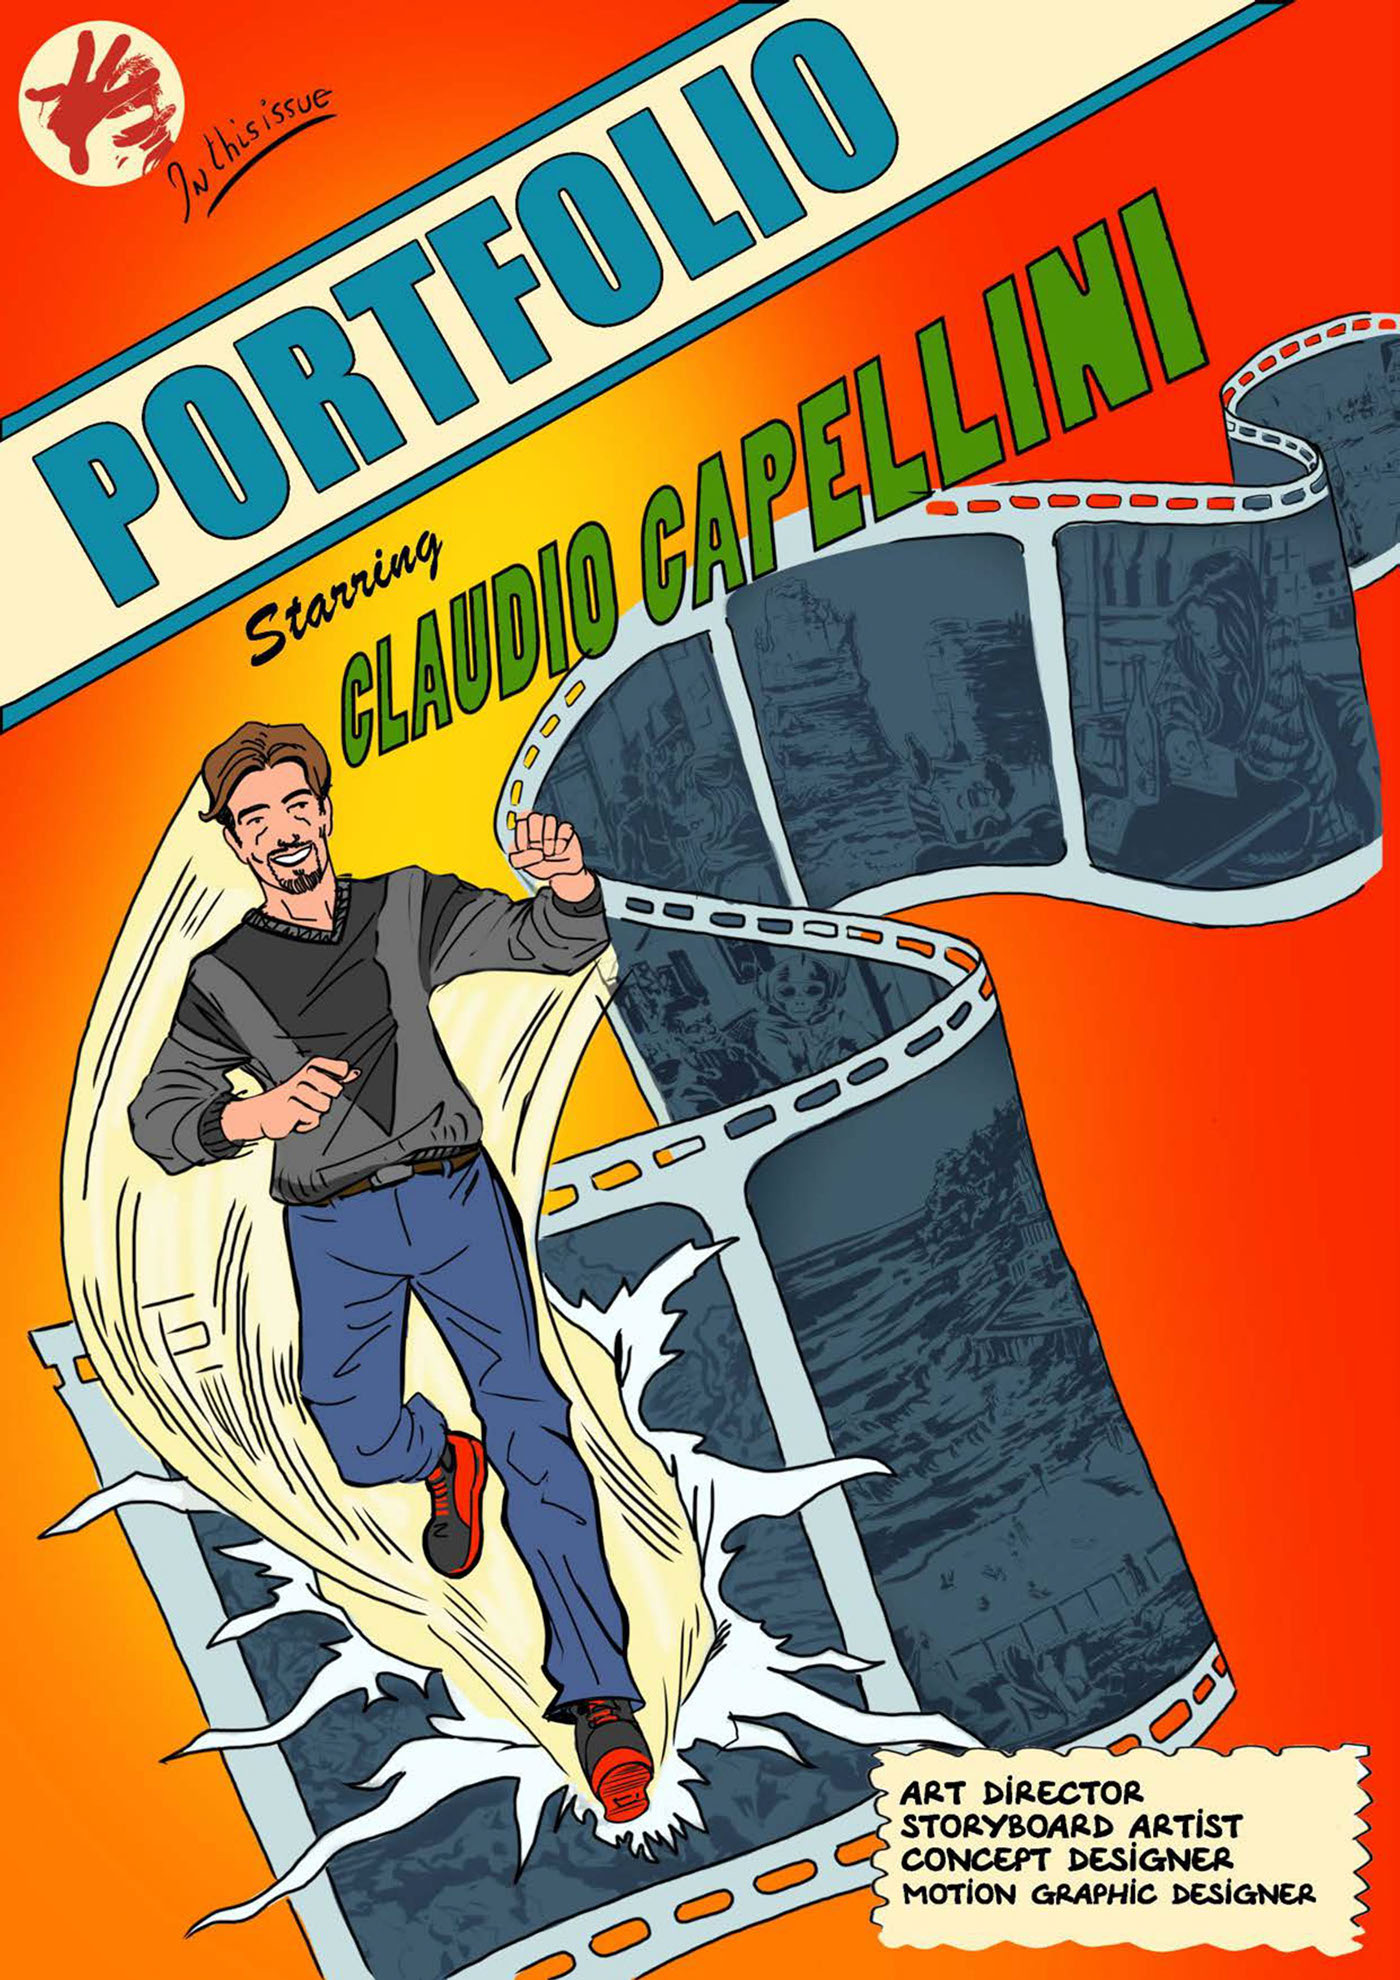 portfolio Claudio Capellini capellini comics storyboard Shootingboard concept commercial lamborghini kartell yahama